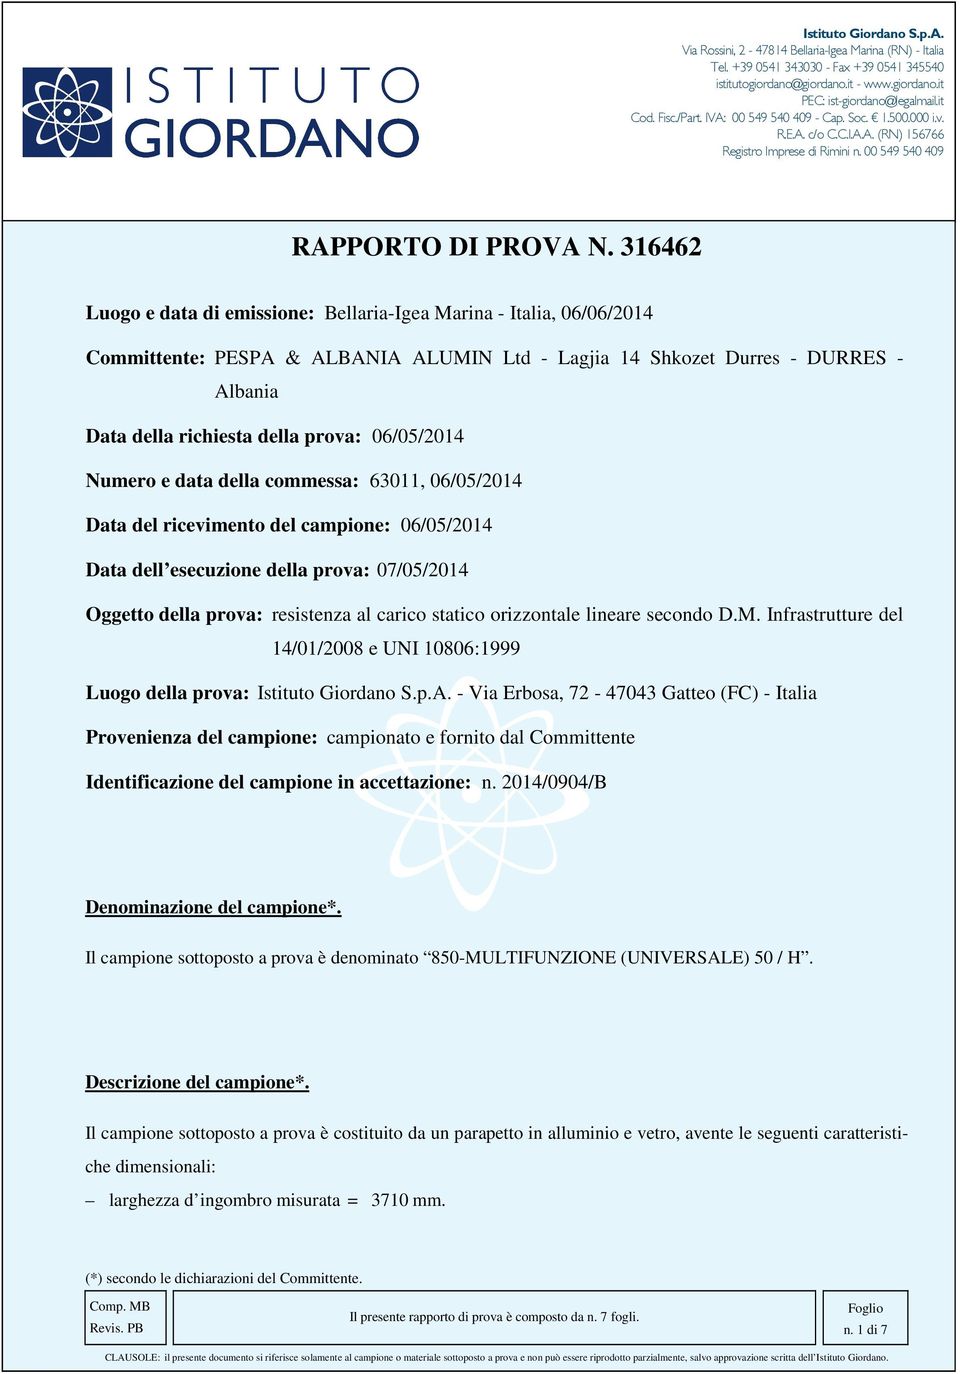 316462 Luogo e data di emissione: Bellaria-Igea Marina - Italia, 06/06/2014 Committente: PESPA & ALBANIA ALUMIN Ltd - Lagjia 14 Shkozet Durres - DURRES - Albania Data della richiesta della prova: